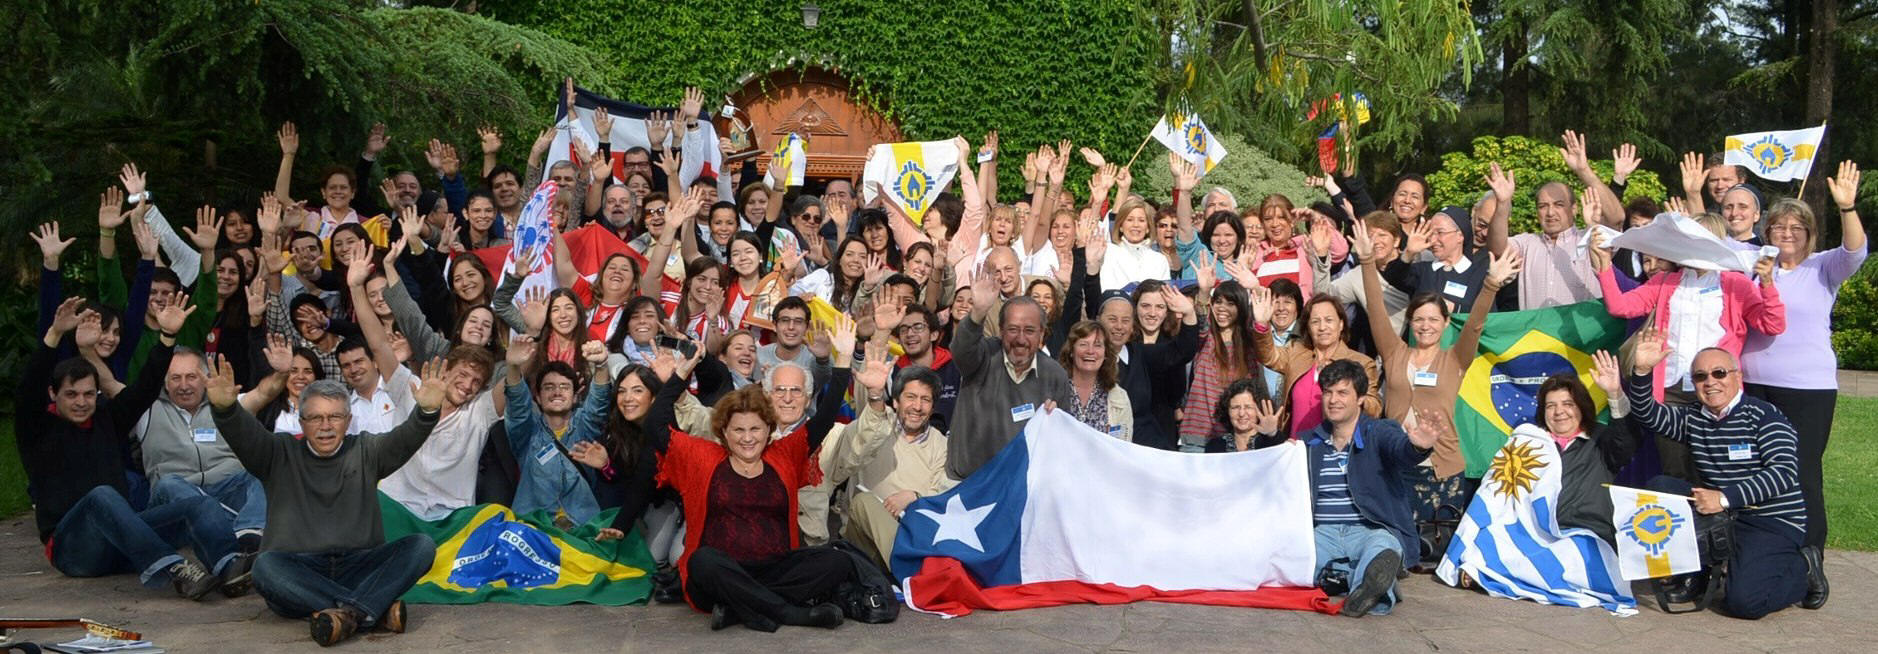 First International Congress for Schoenstatt Communicators, Buenos Aires, 9-11 November 2012